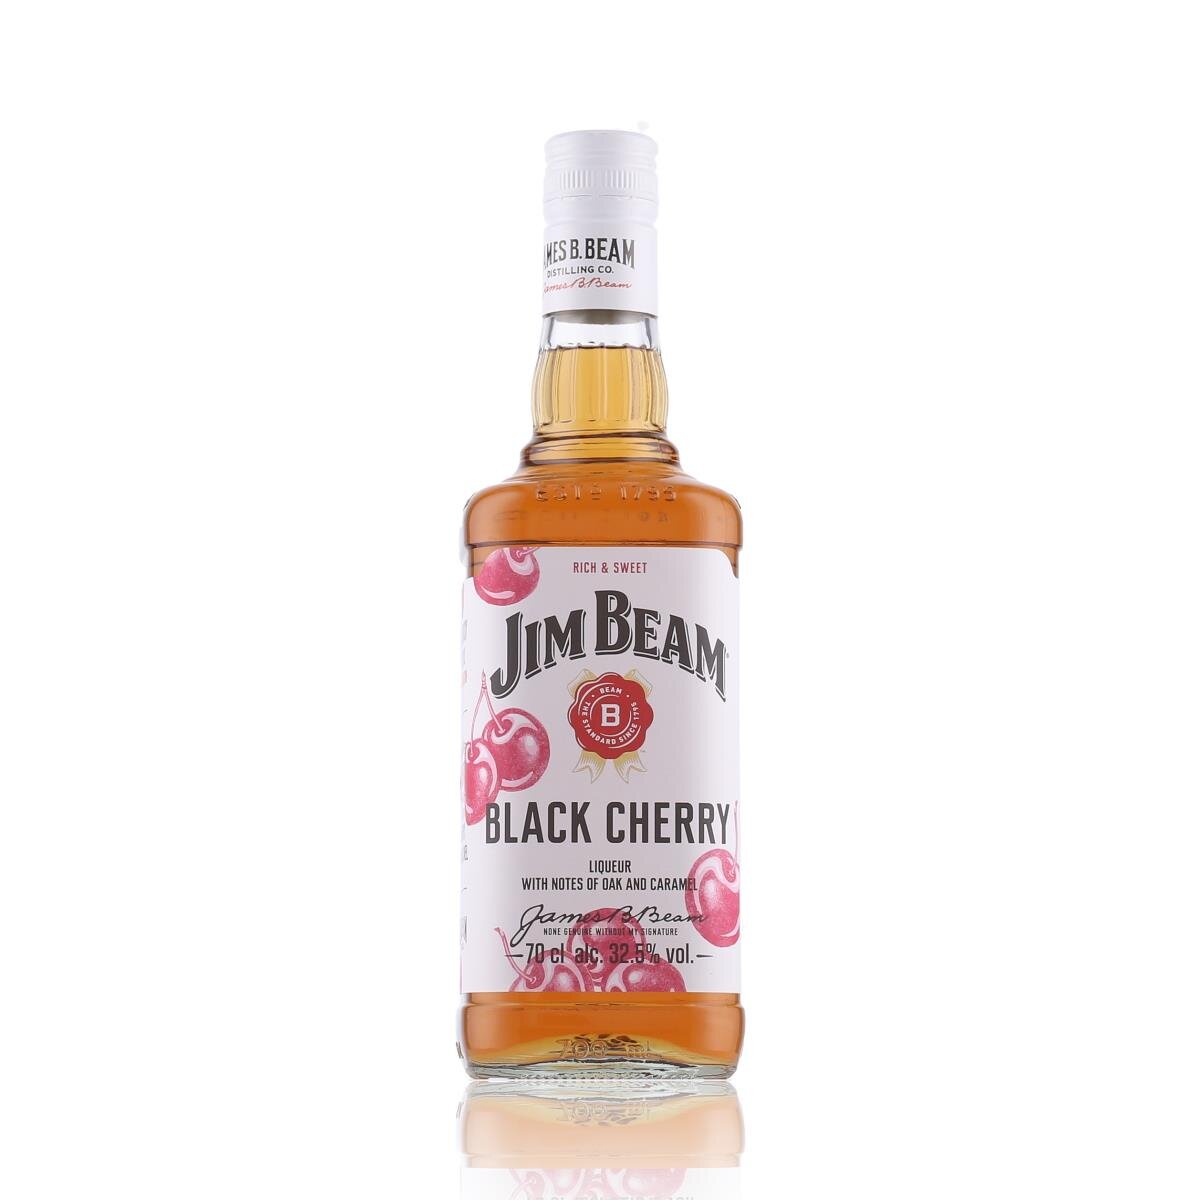 Jim Beam Black Cherry Whiskey-Likör 14,79 0,7l, Vol. 32,5% €